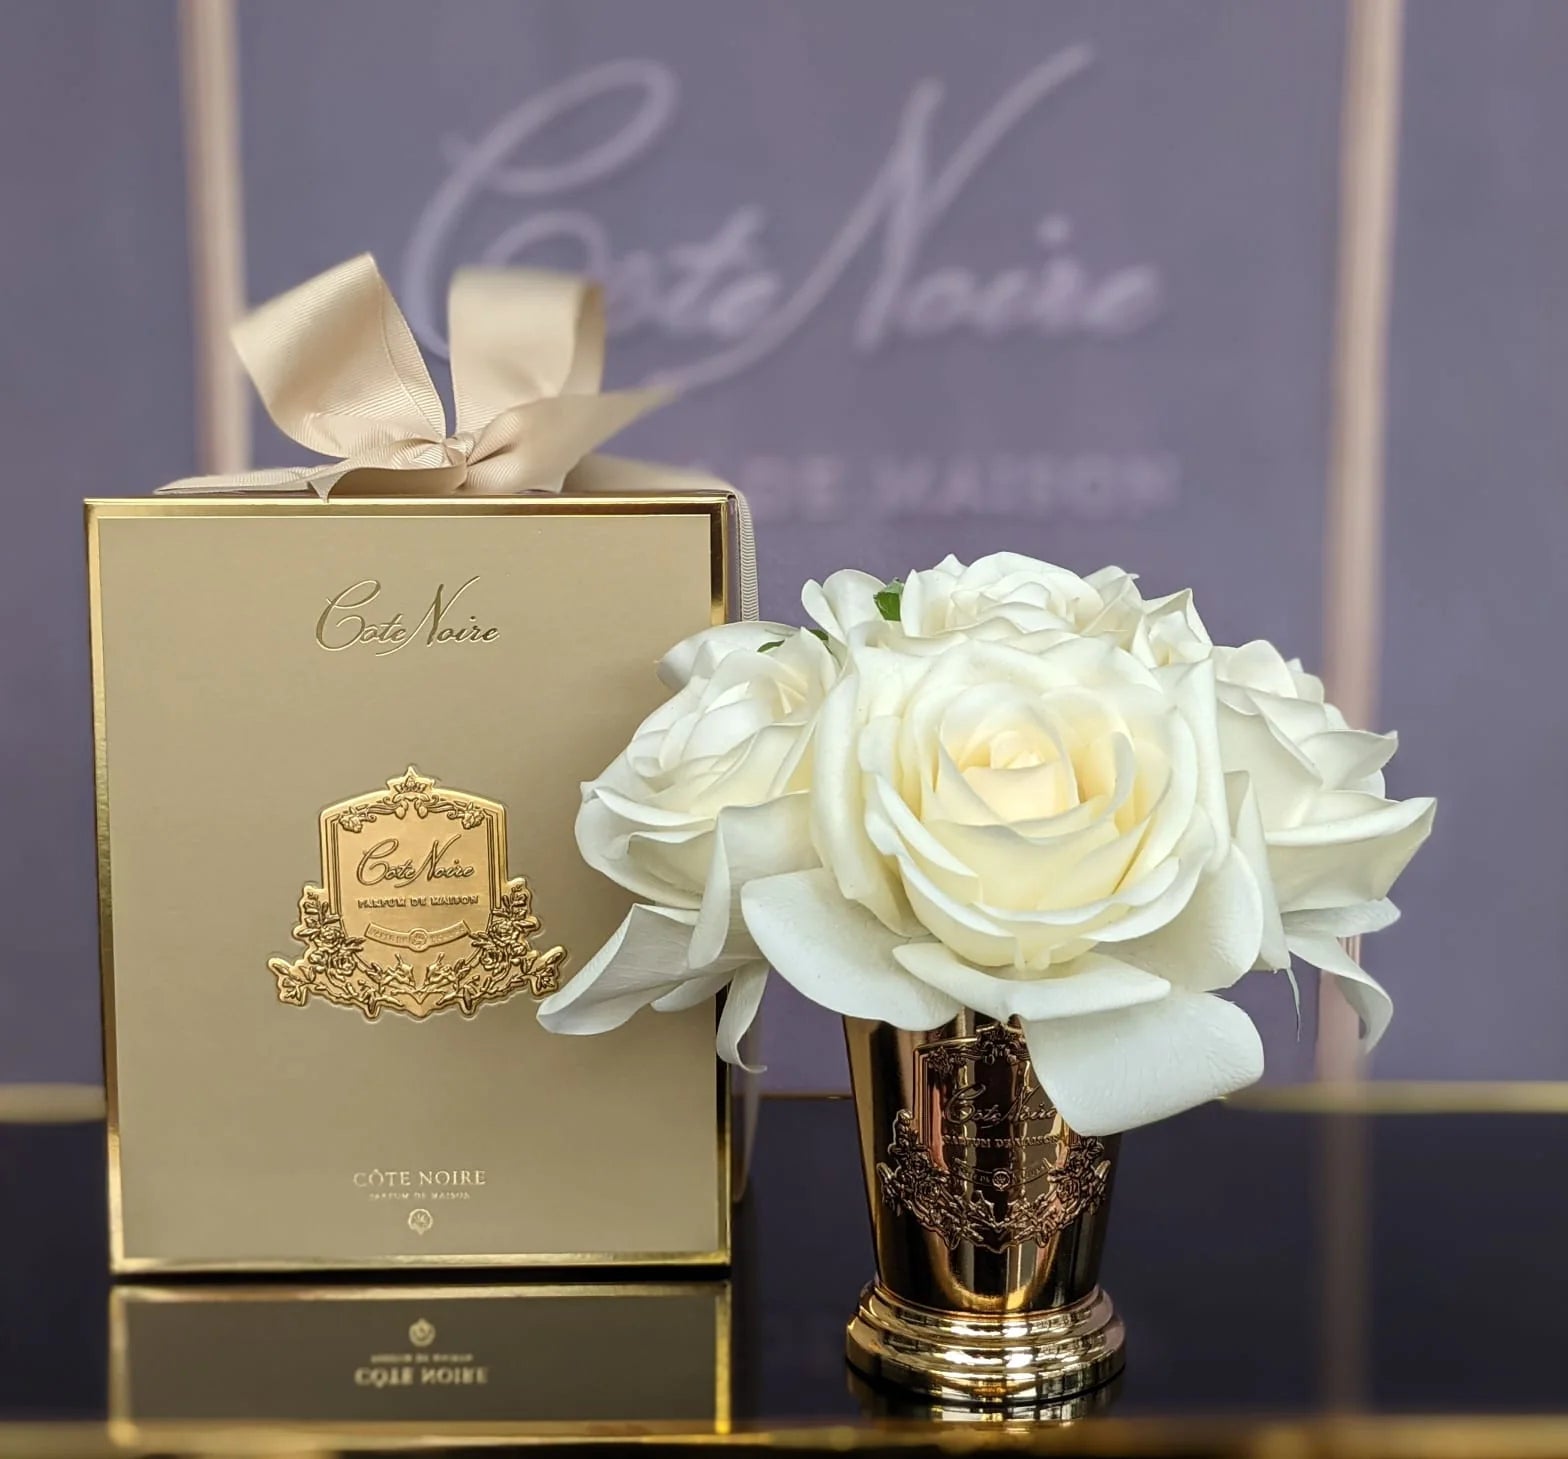 sieben rosen duftblume in goldenem kelch neben geschenkbox auf gold blauem praesentiertisch.